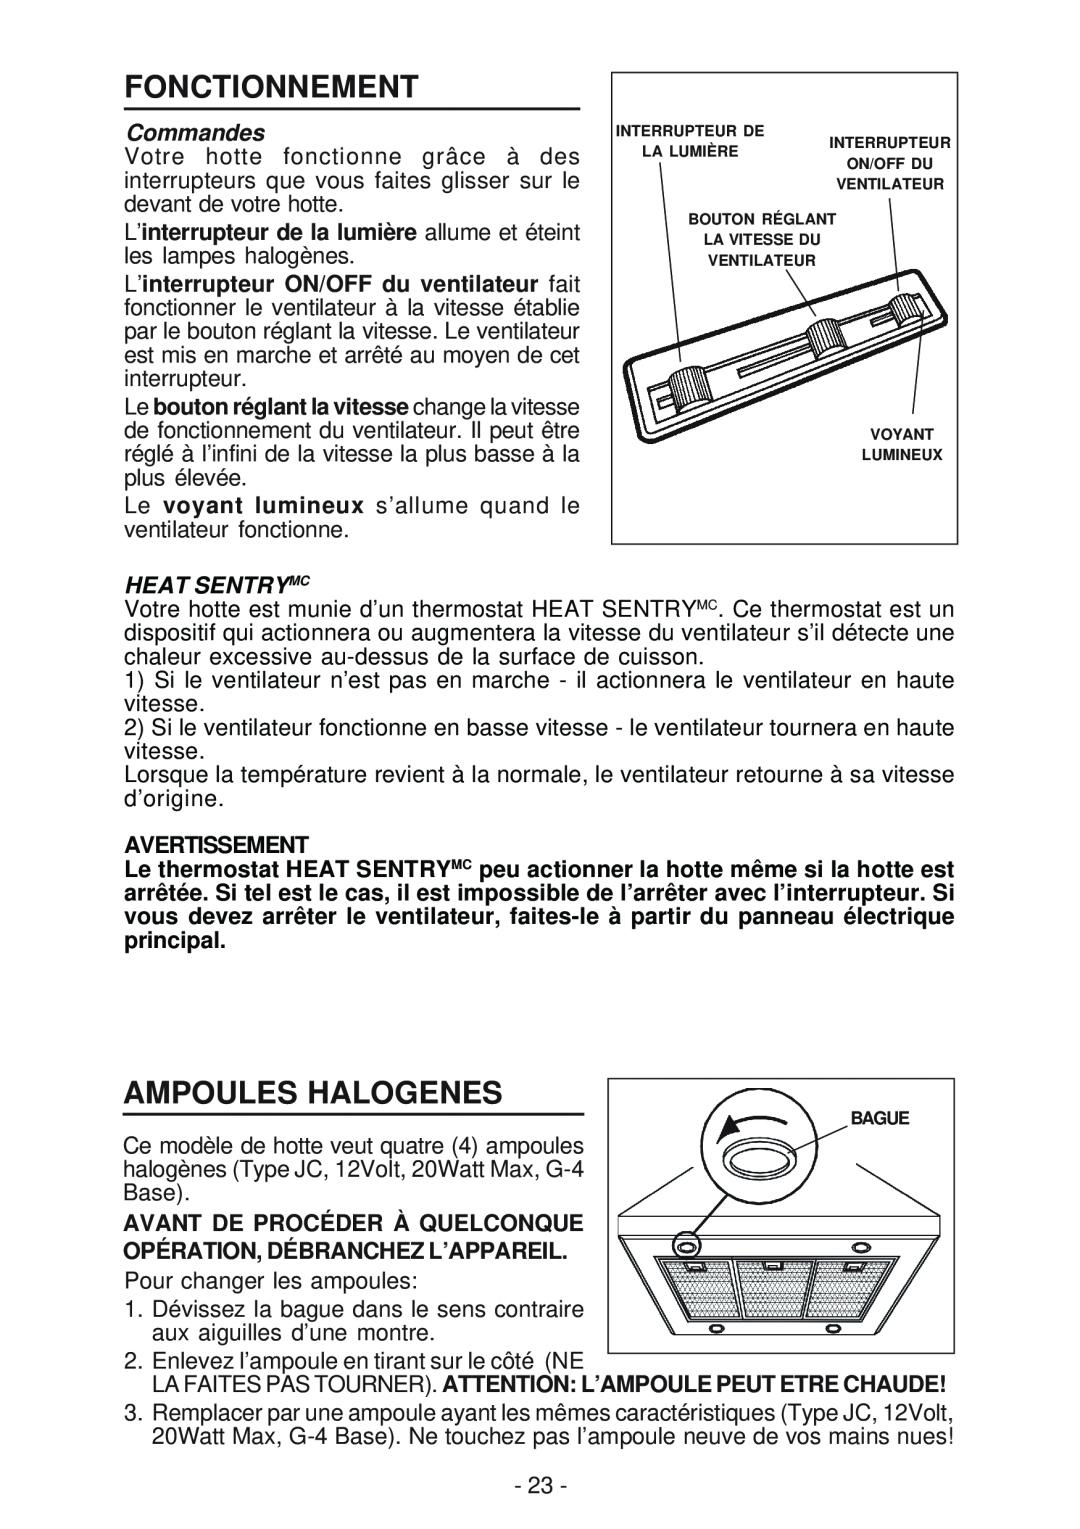 Broan 63000EX manual Fonctionnement, Ampoules Halogenes, Commandes, Heat Sentrymc, Avertissement 